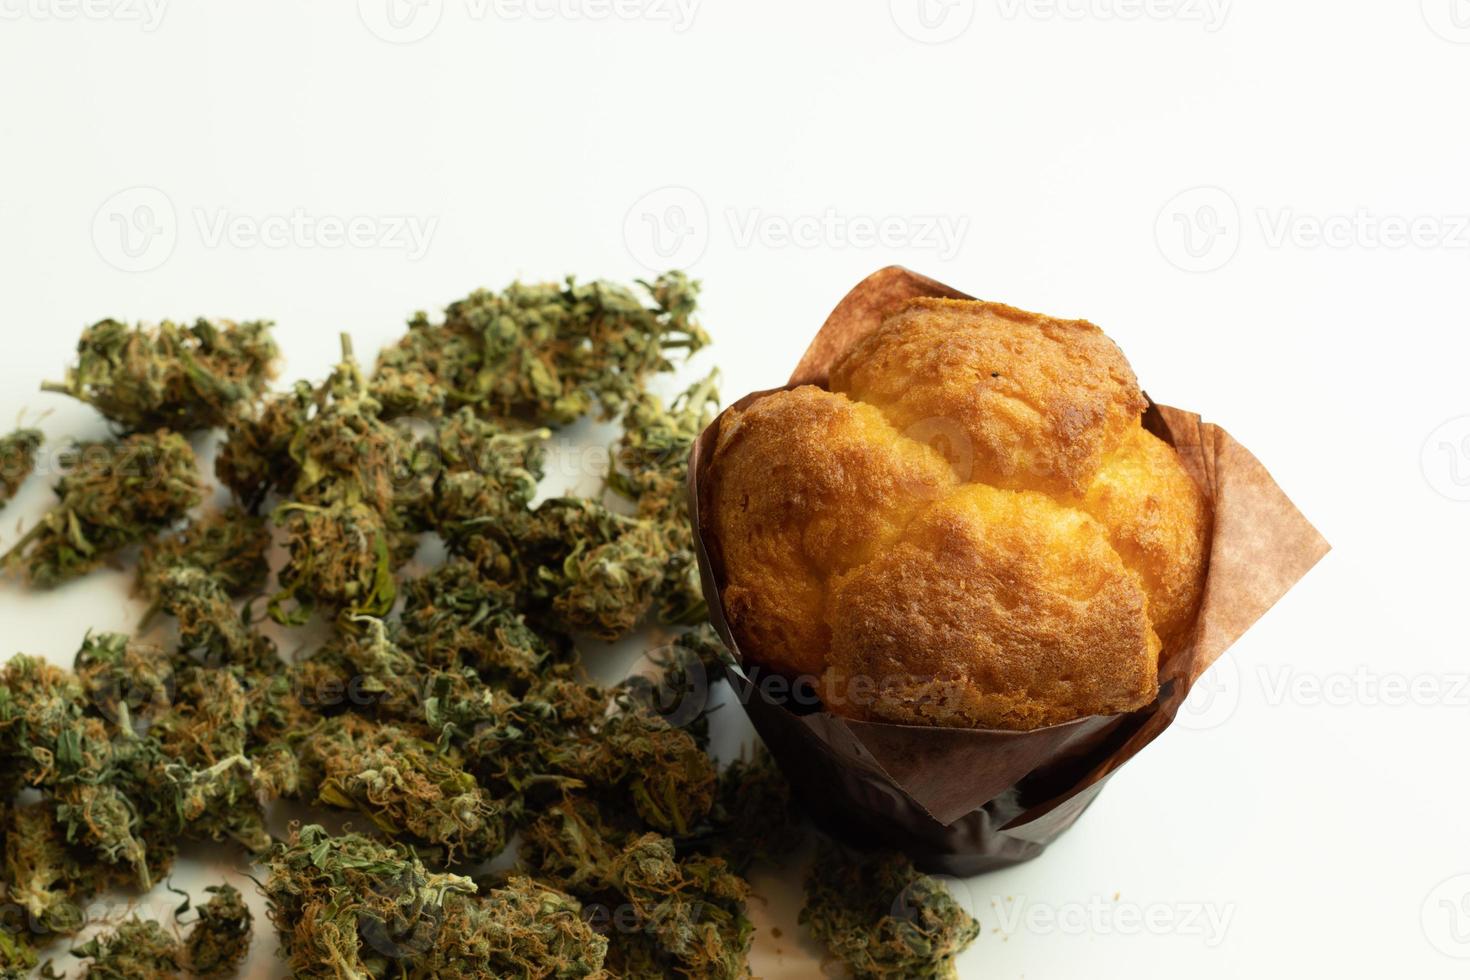 Cannabis infused baked food product. Marijuana drug use photo